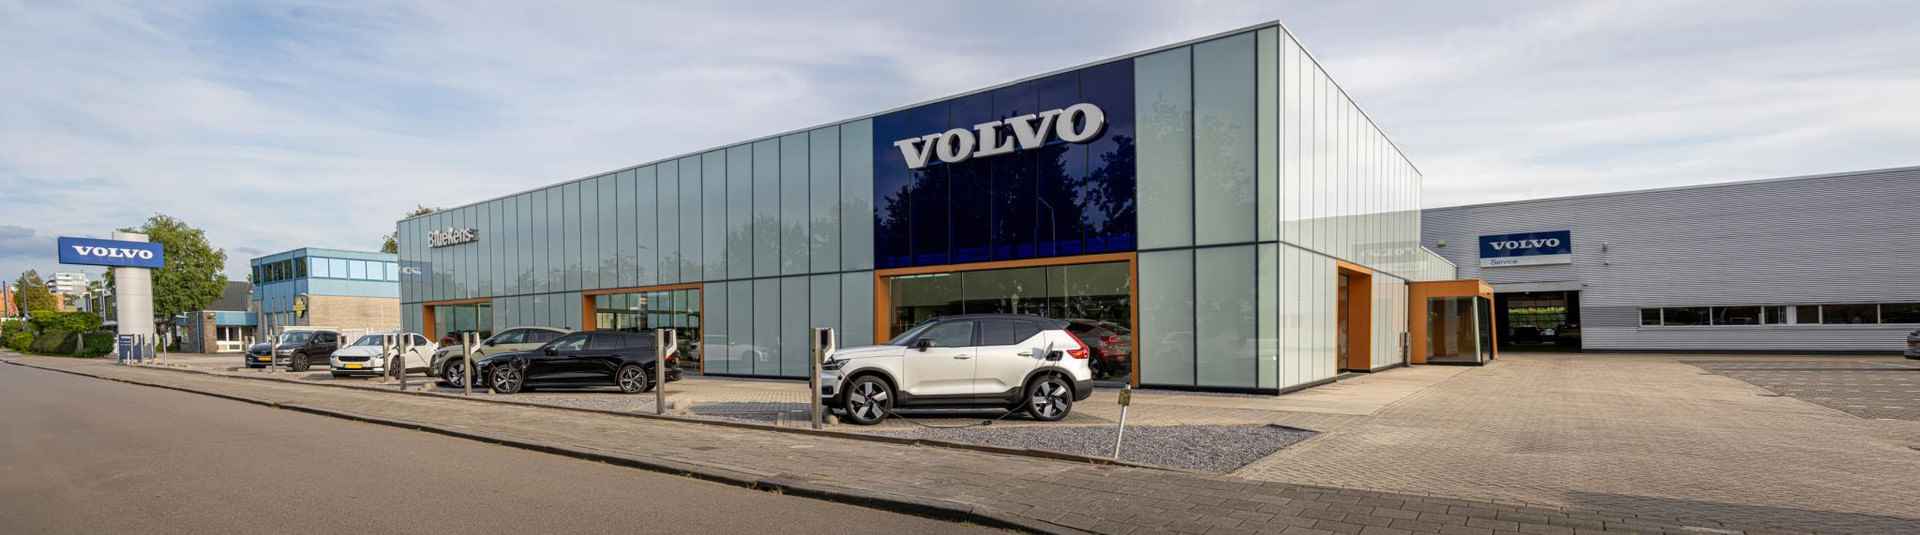 Volvo V90 T6 AWD Recharge Inscription - Panorama/schuifdak - IntelliSafe Assist & Surround - Harman/Kardon audio - Adaptieve LED koplampen - Parkeercamera achter - Verwarmde voorstoelen & stuur - Parkeersensoren voor & achter - Elektr. bedienb. voorstoelen met geheugen - Standkachel - 19' LMV - 33/33